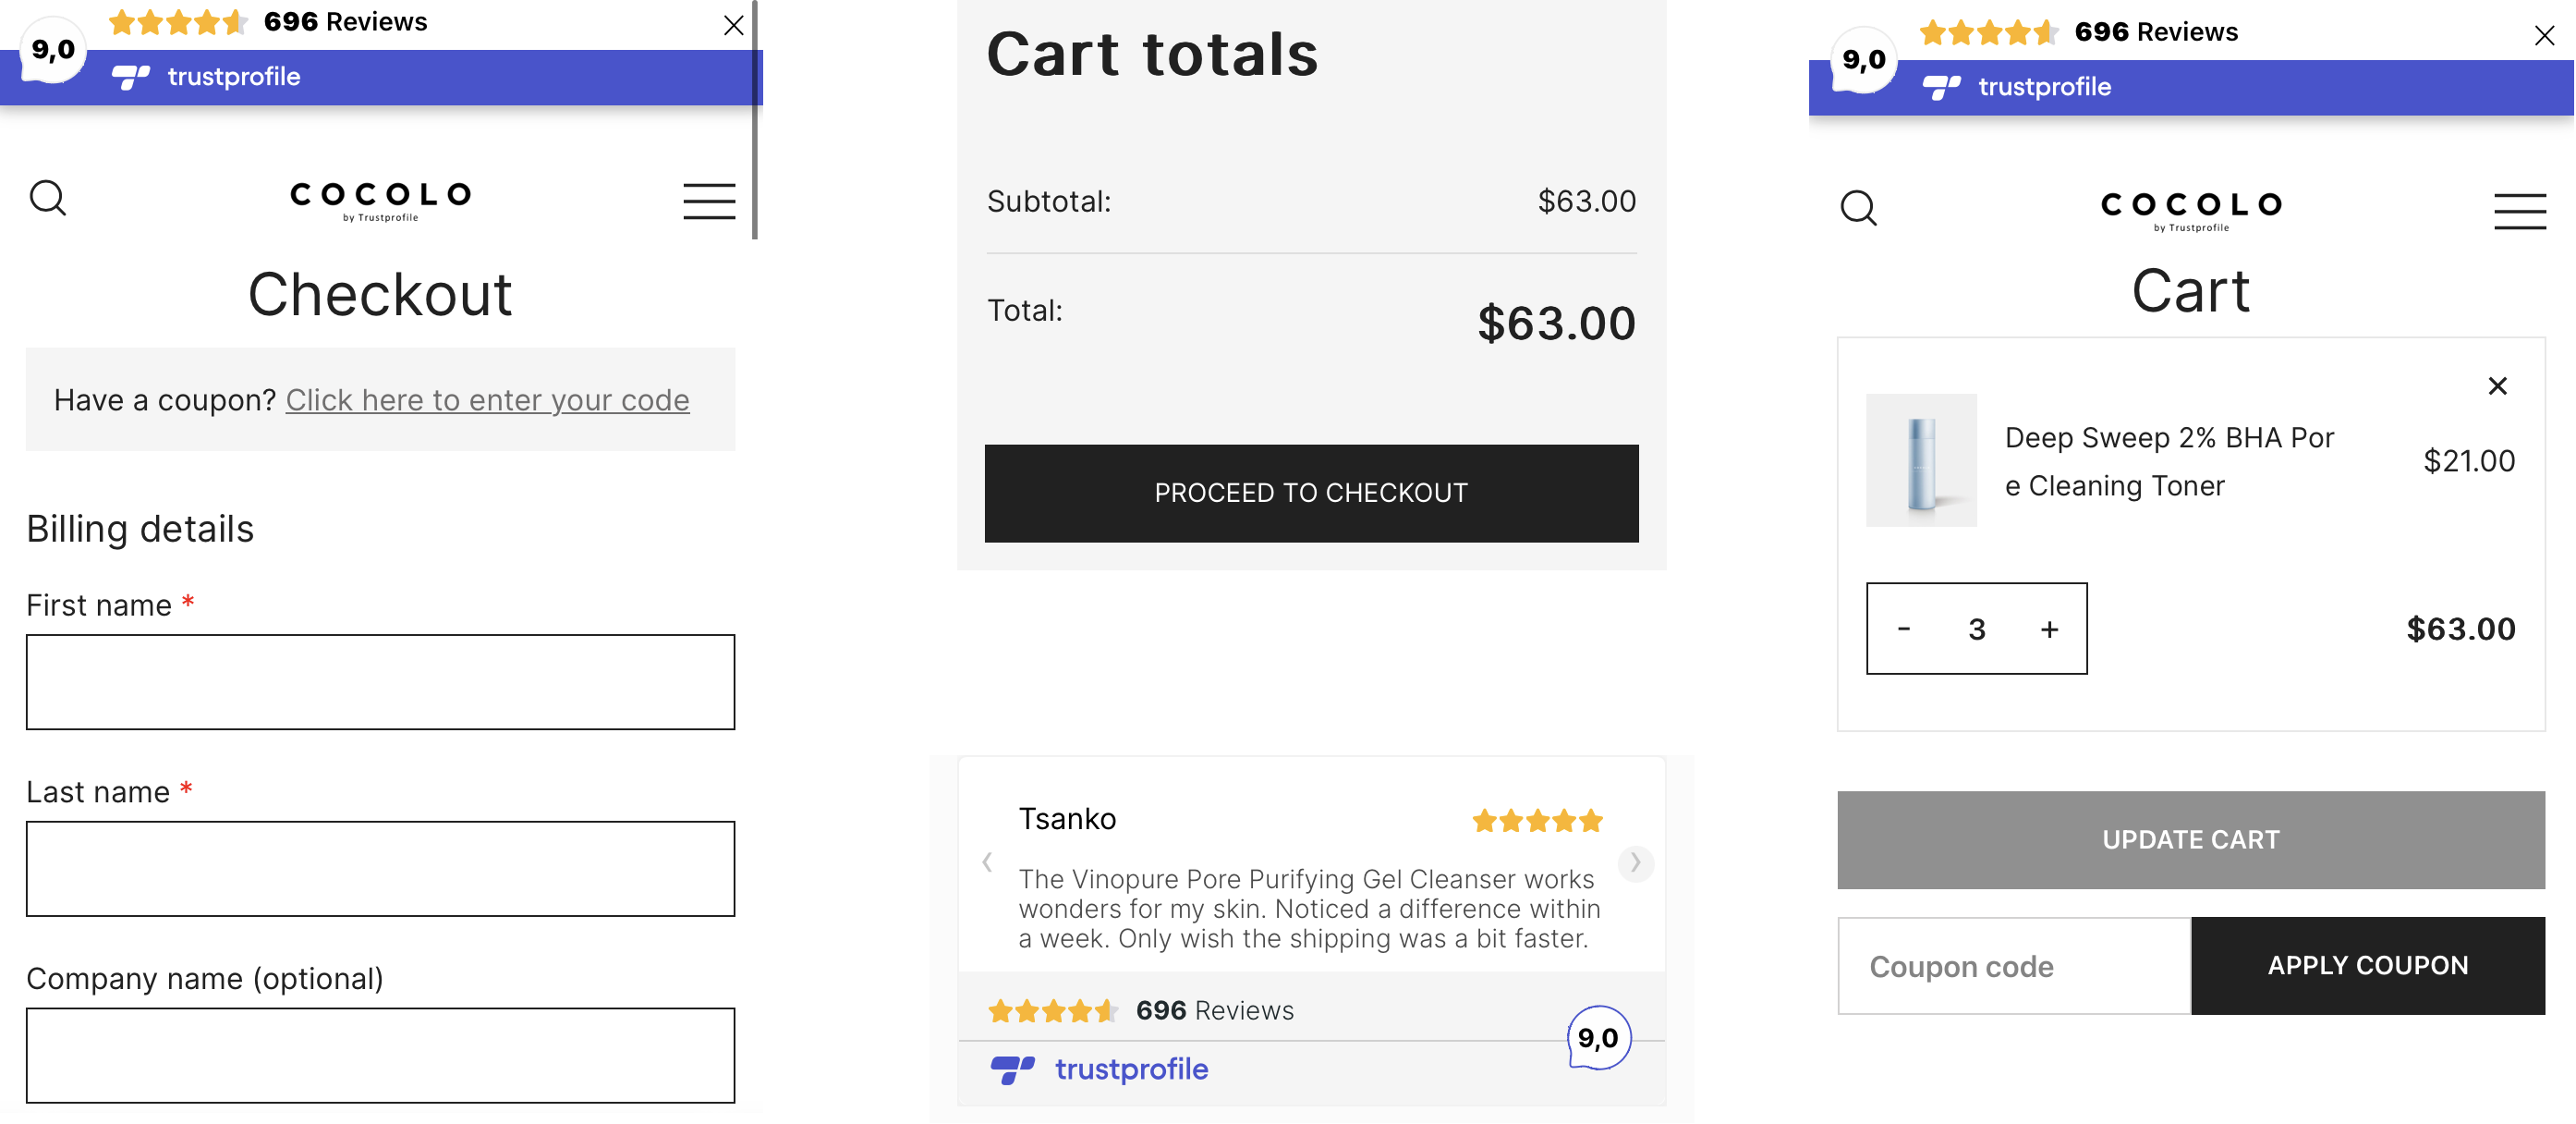 Reviews Various Sources - Boost E-commerce Sales